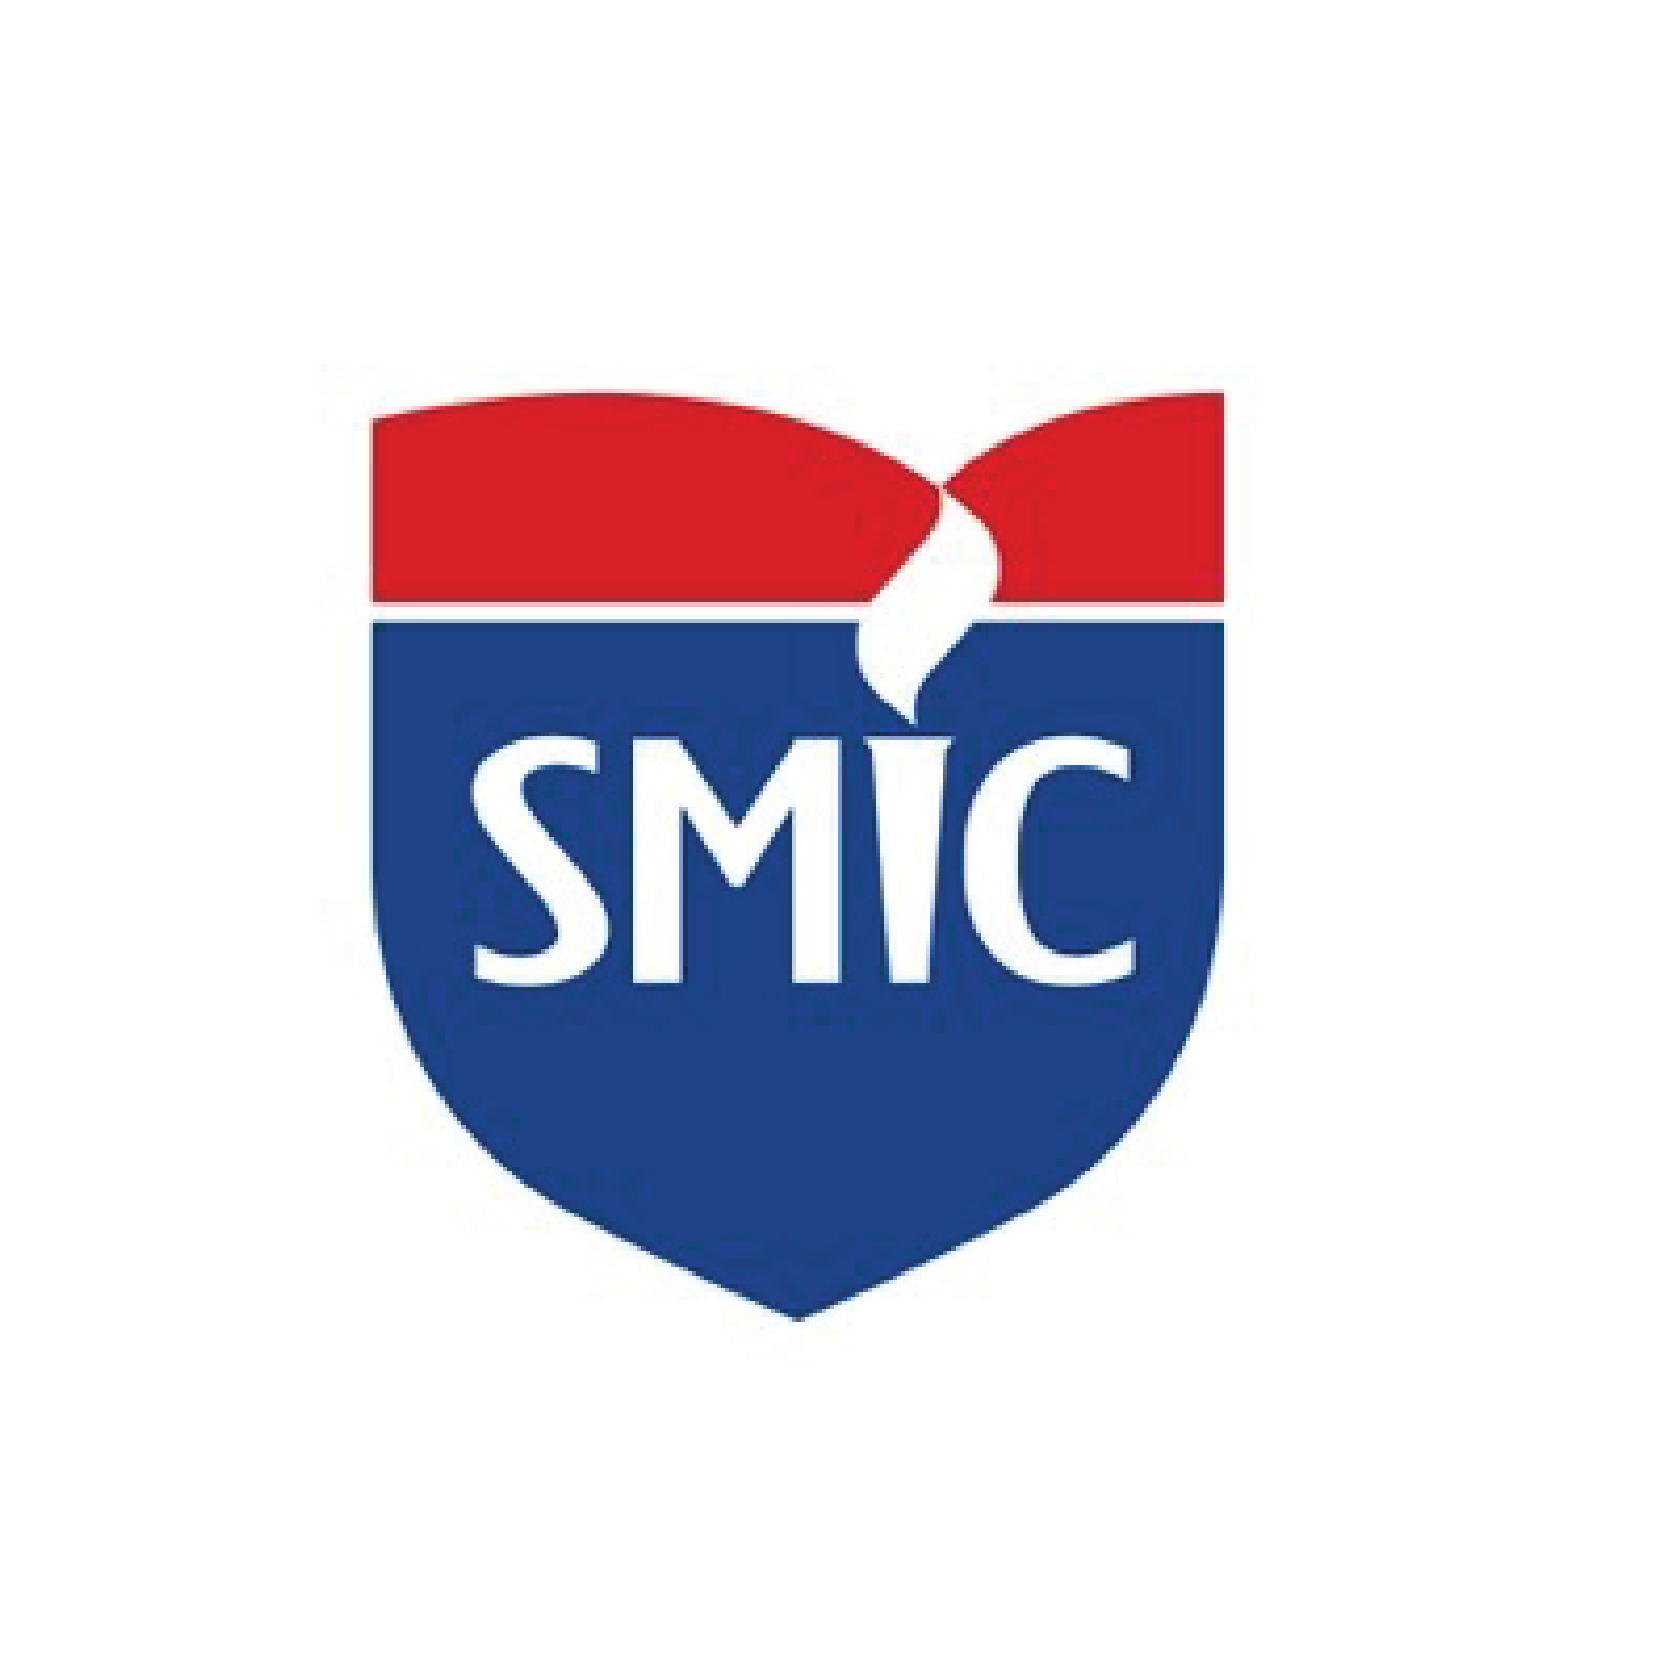 smic-logo-01